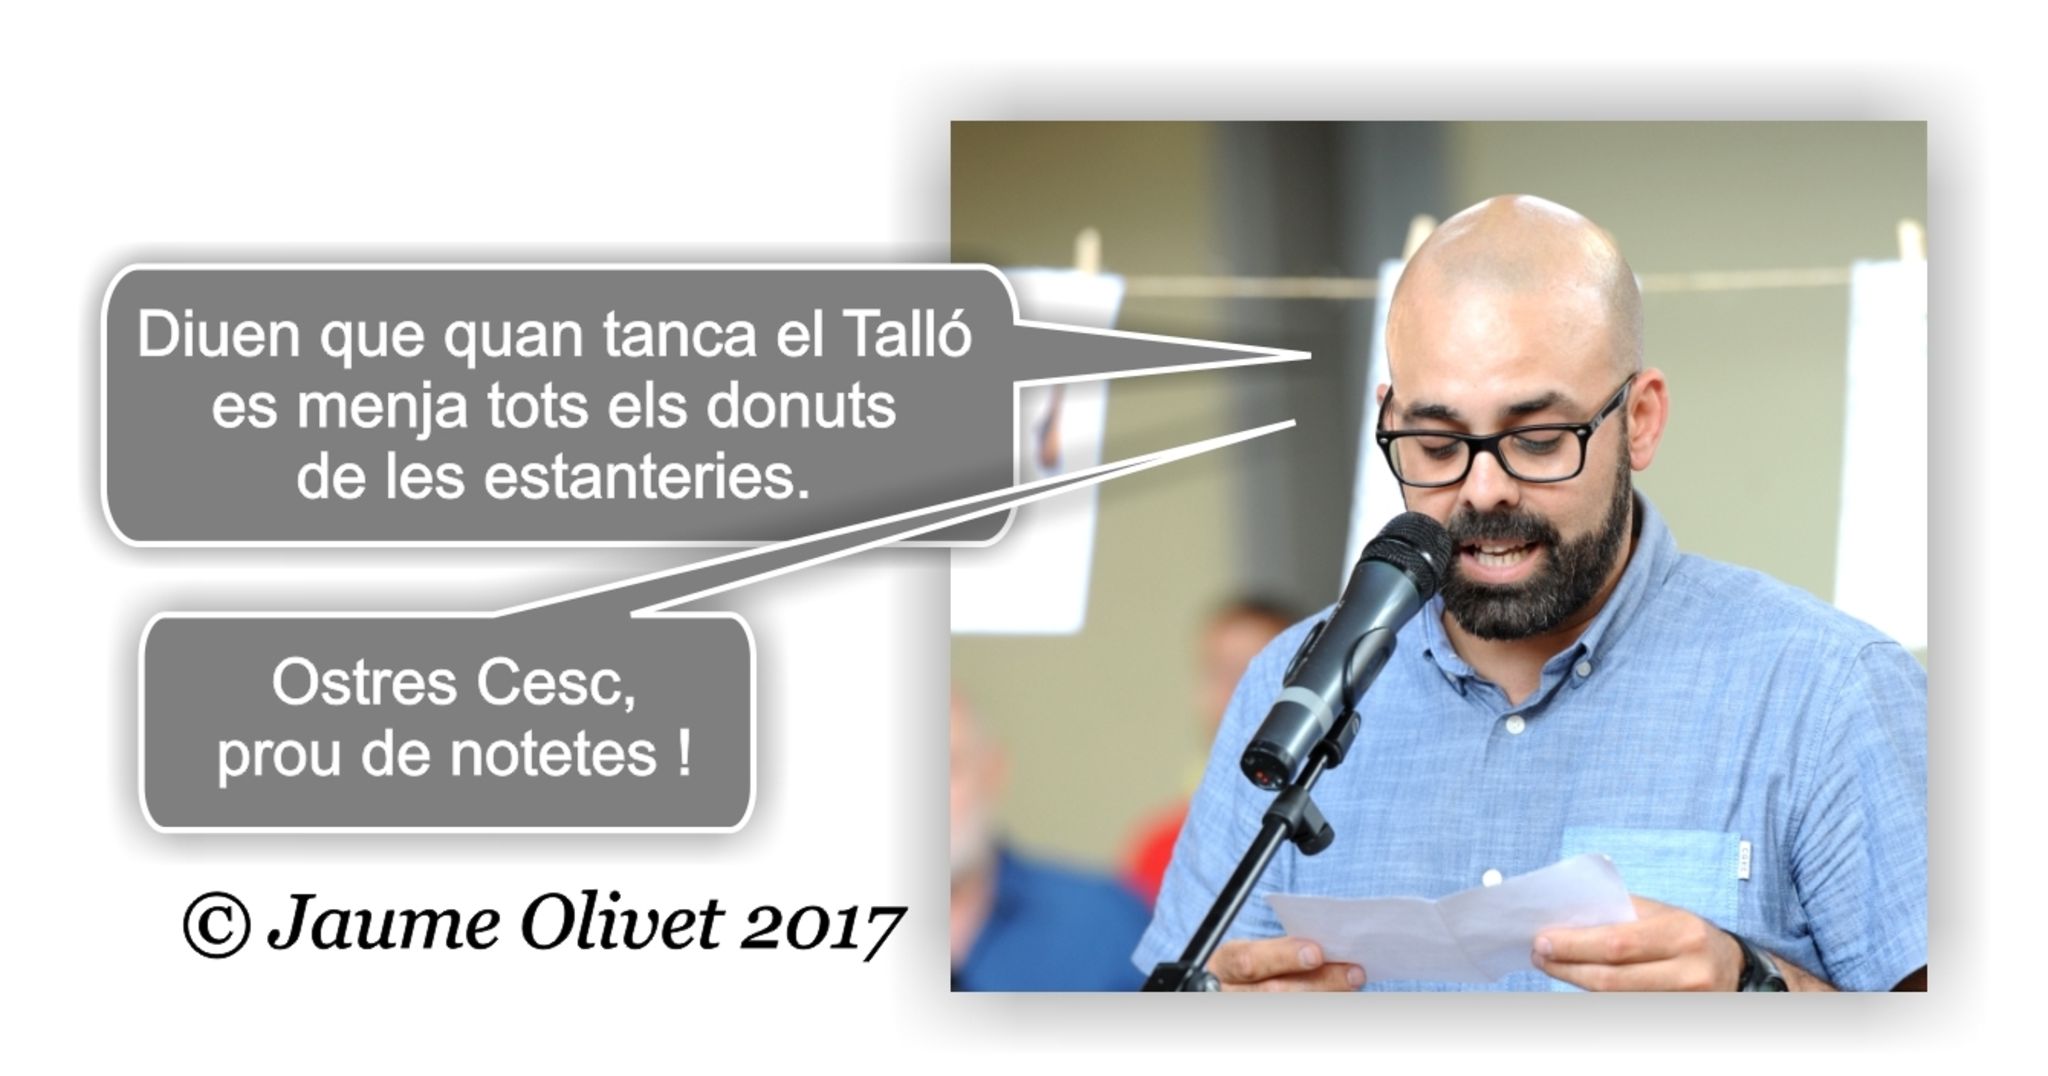  Jaume Olivet 2017